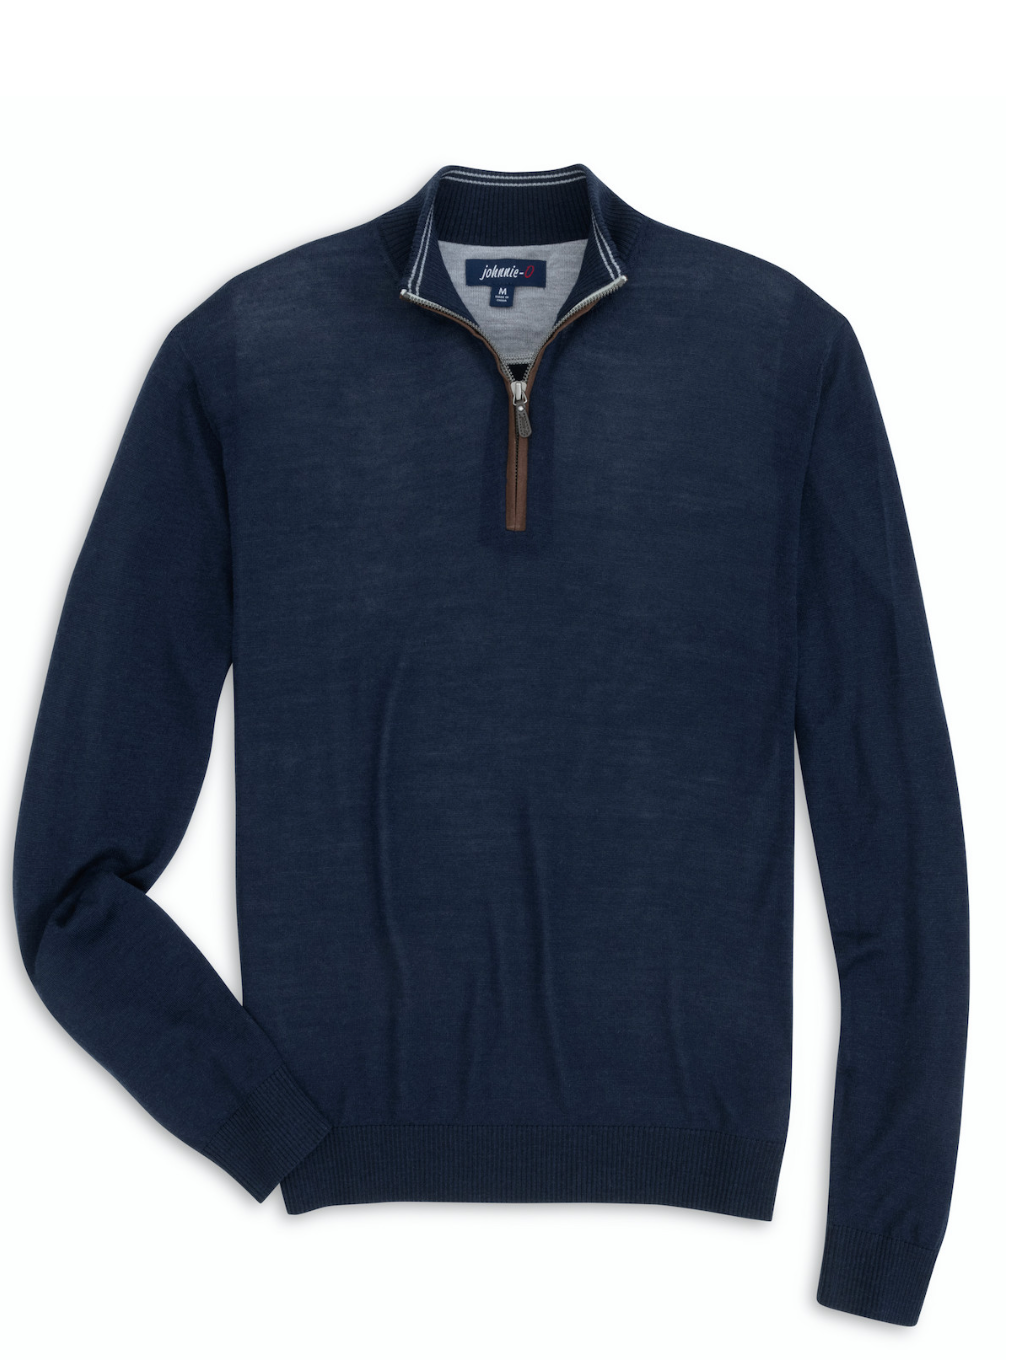 Baron Lightweight Wool Blend 1/4 Zip Pullover Sweater